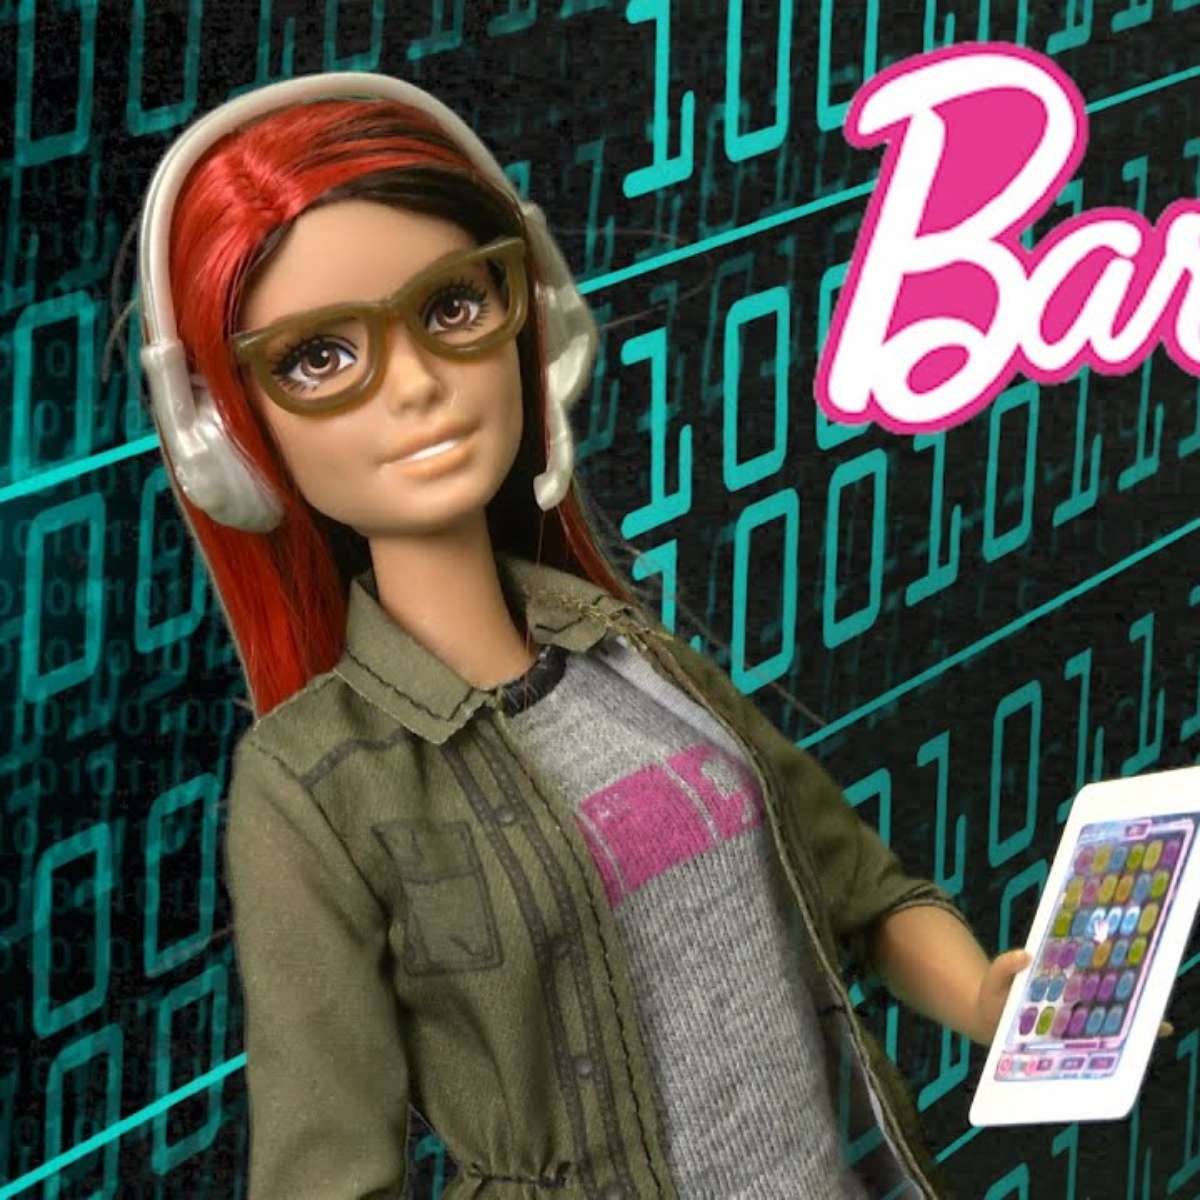 Barbie nos Games: O histórico da boneca nos games - GoGamers - O lado  acadêmico e business do mercado de games